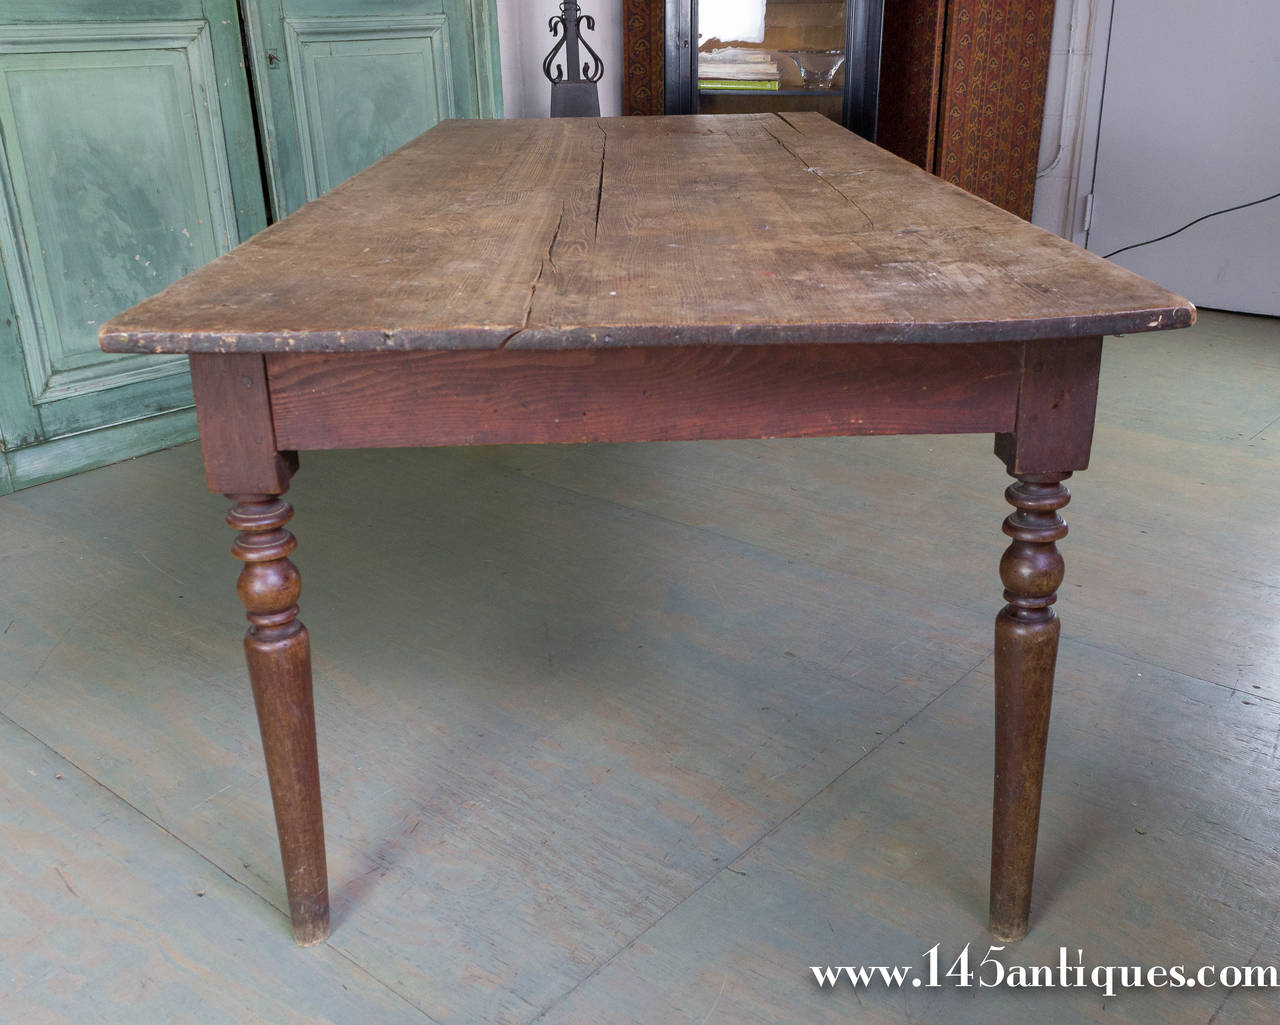 Vintage large oak farm table with turned legs.